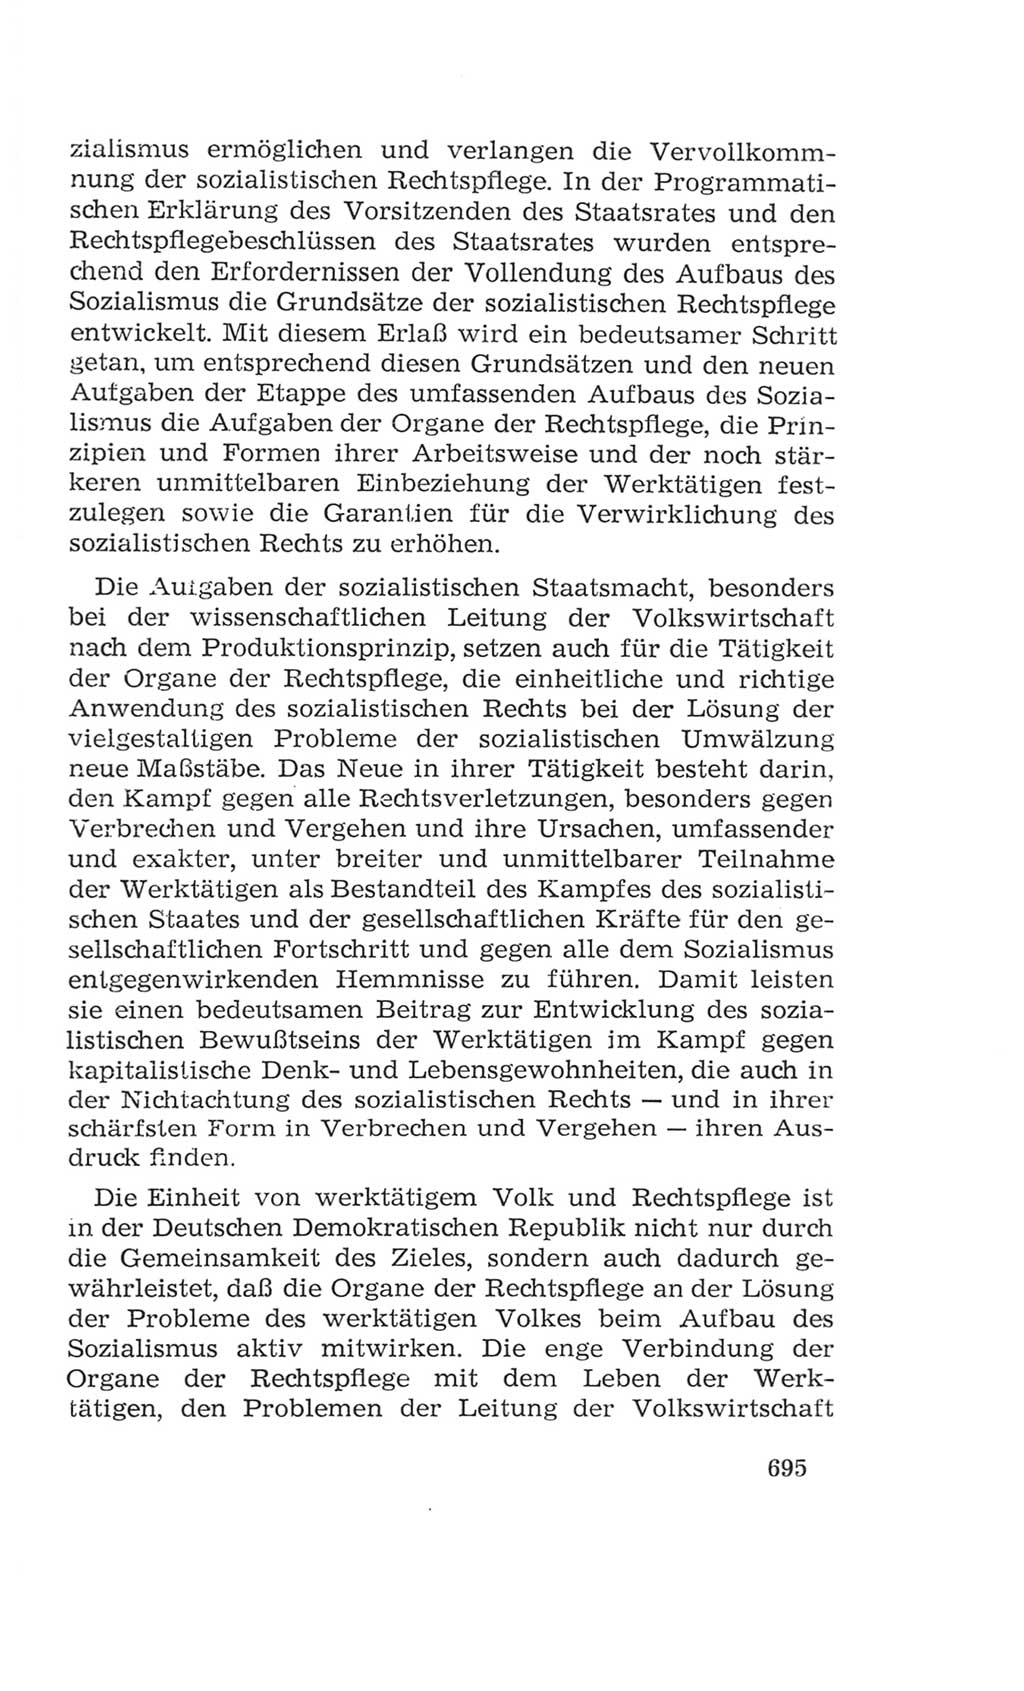 Volkskammer (VK) der Deutschen Demokratischen Republik (DDR), 4. Wahlperiode 1963-1967, Seite 695 (VK. DDR 4. WP. 1963-1967, S. 695)